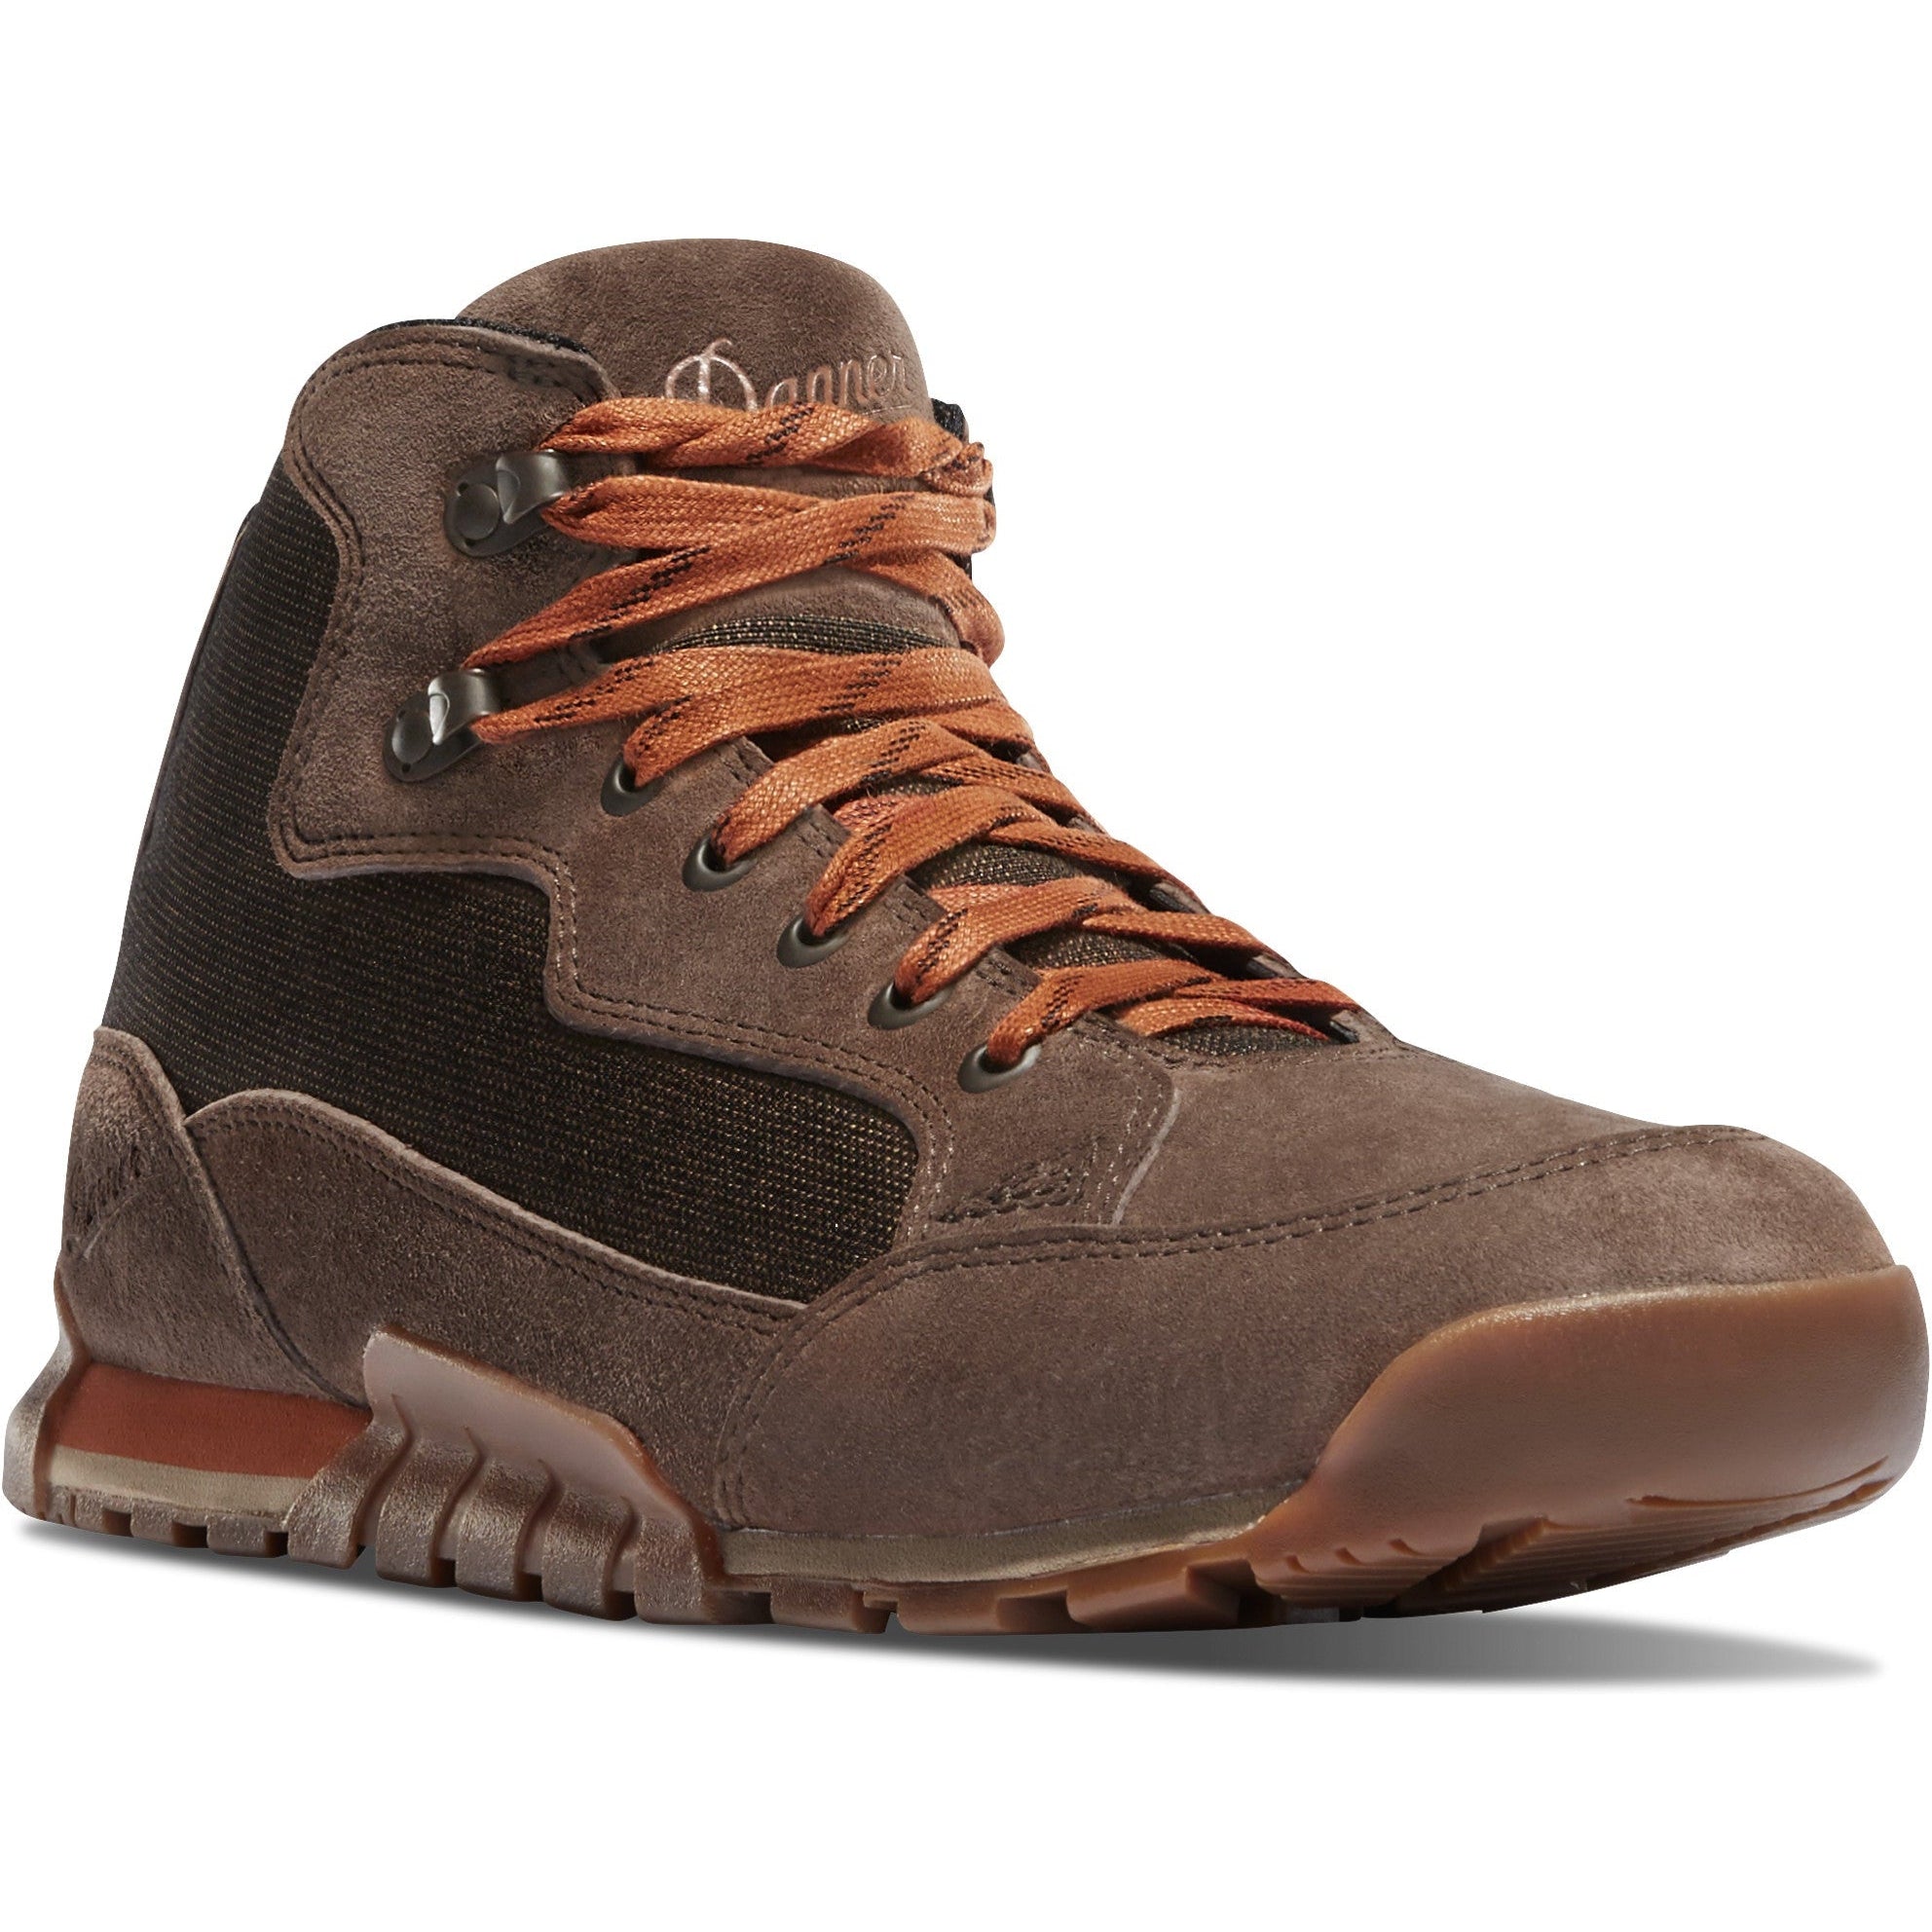 Danner Men's Skyridge 4.5" WP Hiking Shoe - Dark Earth - 30162 7 / Medium / Brown - Overlook Boots